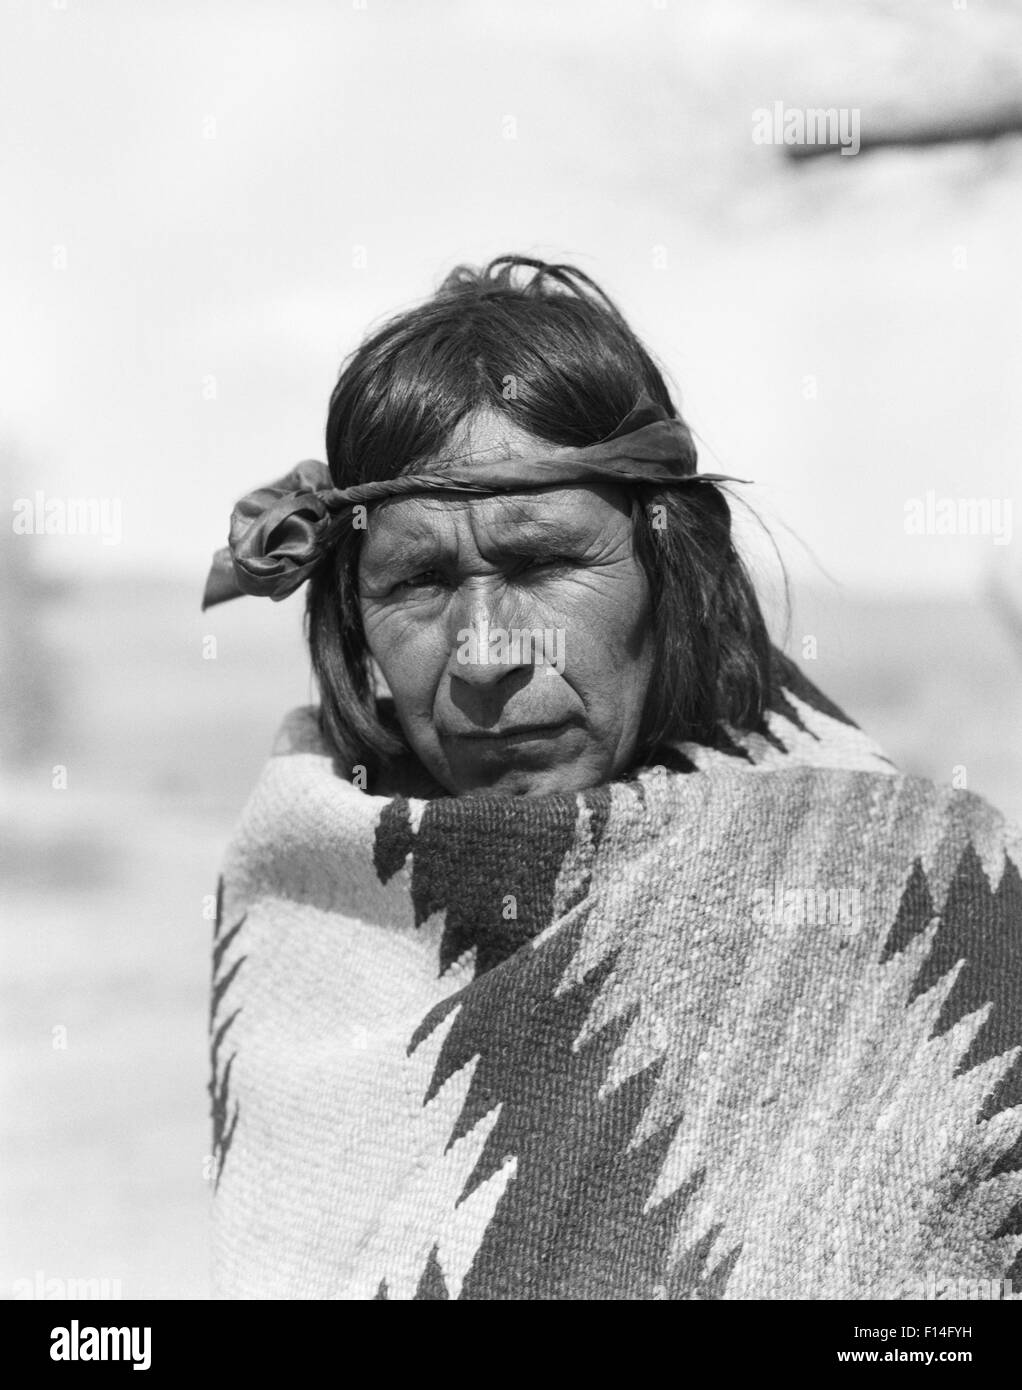 1930ER JAHREN ERNSTHAFTE PORTRAIT INDIANER INDER COCHITI PUEBLO IN  HANDGEWEBTEN DECKE BLICK AUF KAMERA NEW MEXICO USA GEWICKELT  Stockfotografie - Alamy